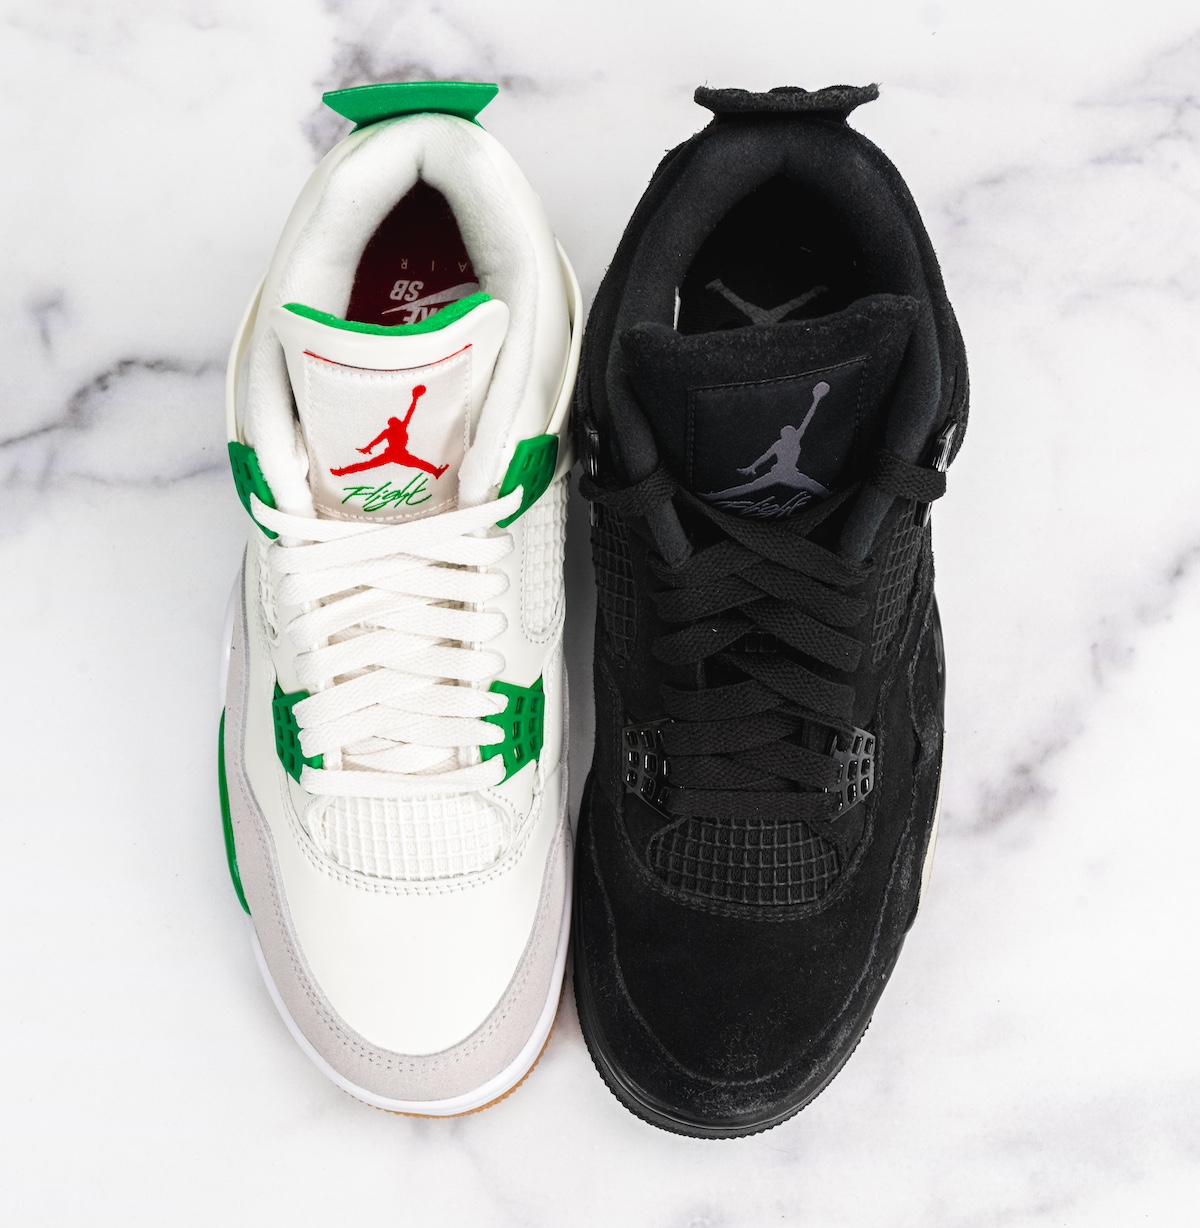 Nike SB Air Jordan 4 Black Cat Pine Green Comparison 3